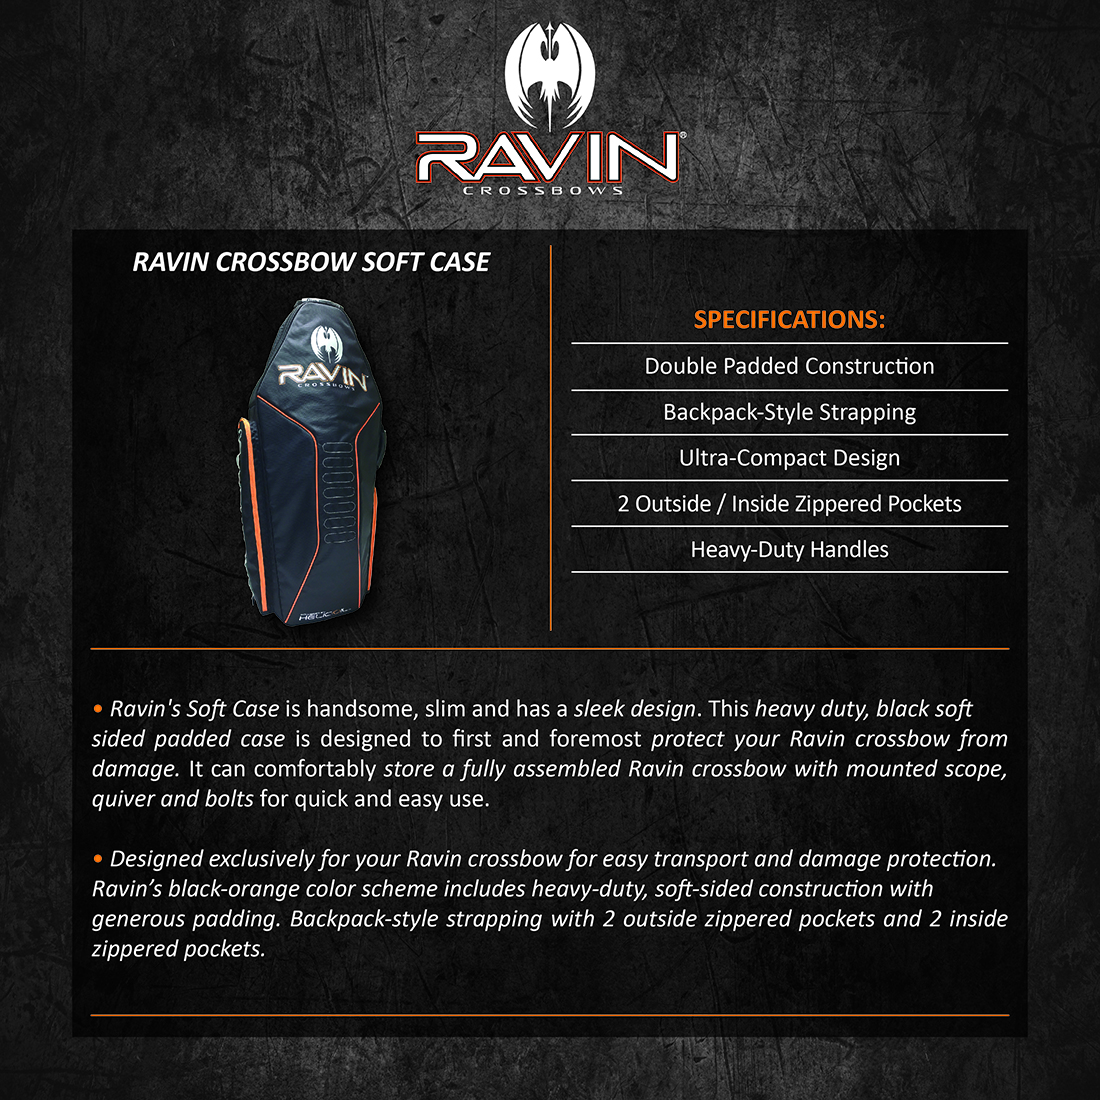 Ravin_Crossbow_Soft_Case_Product_Description